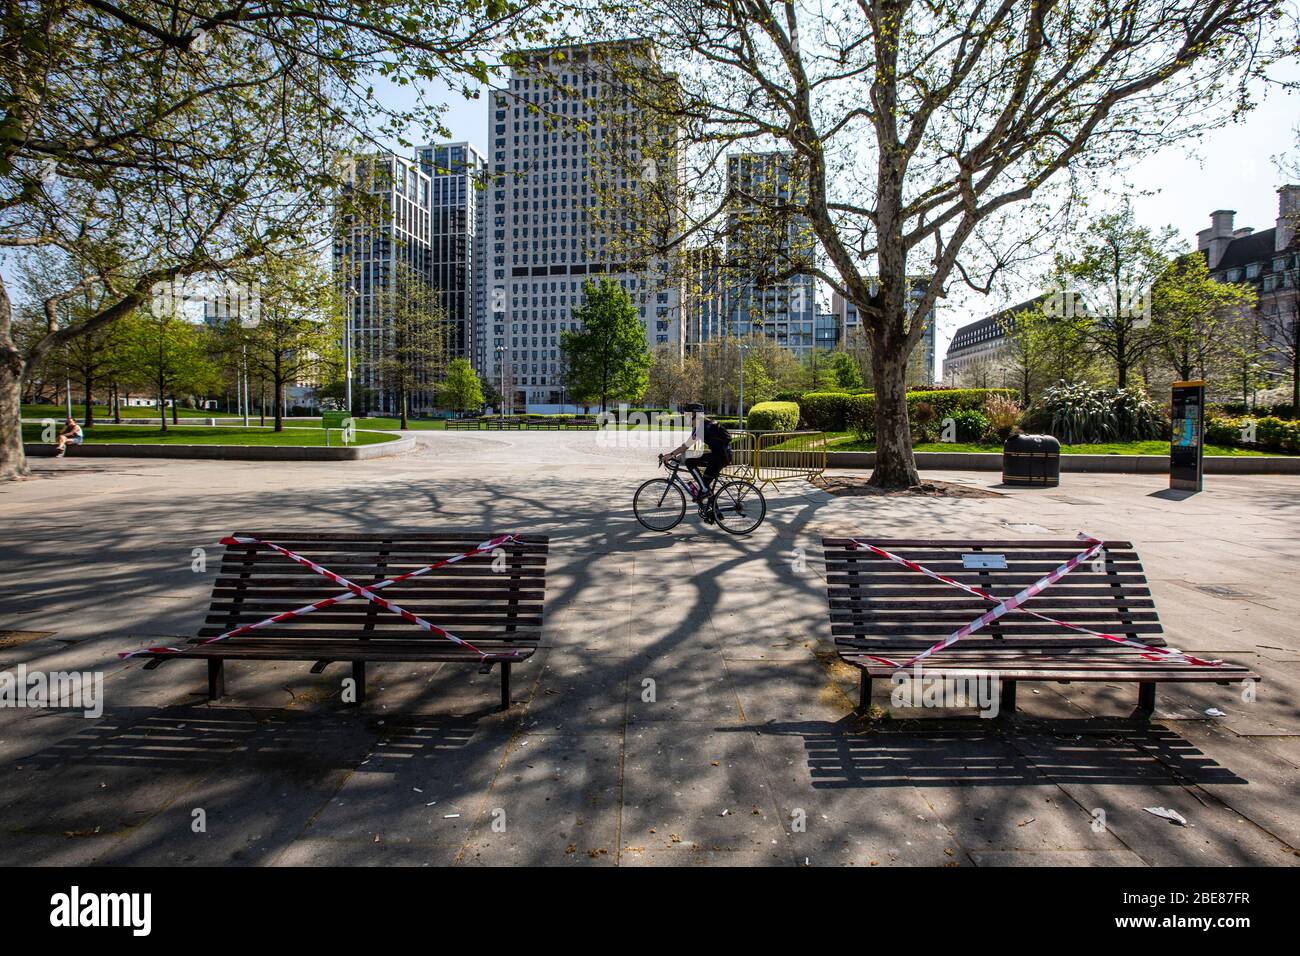 Les bancs de parc s'assoient vides le long de la rive sud de Londres, interdisant aux touristes de s'asseoir sur eux pendant le verrouillage du coronavirus, Angleterre, Royaume-Uni Banque D'Images